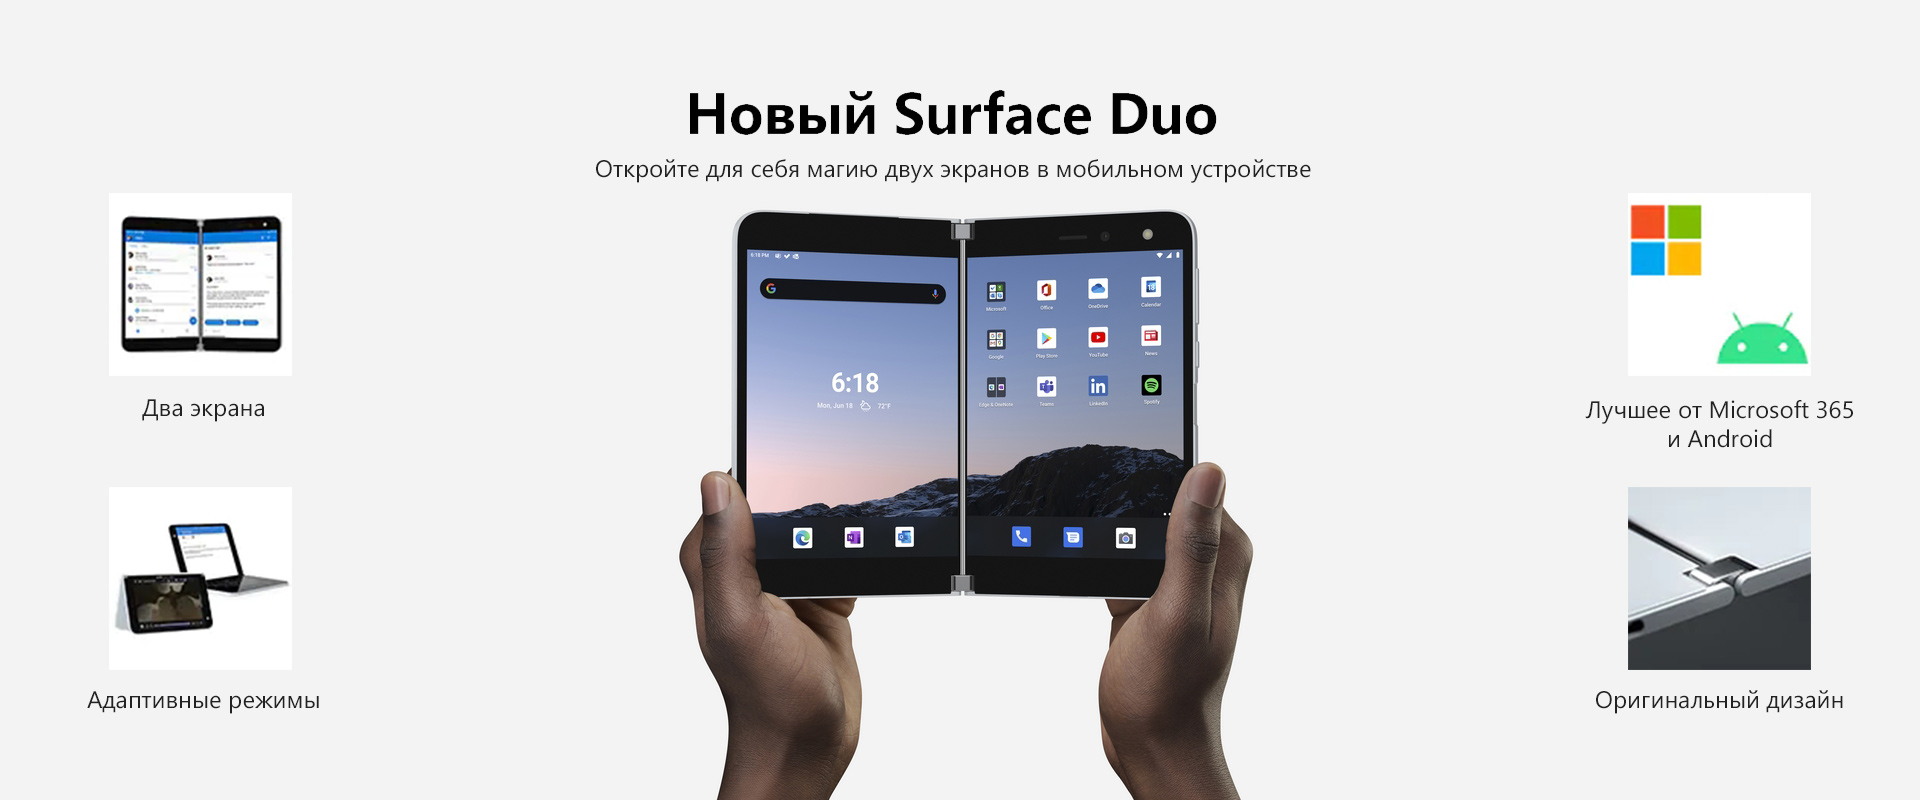 Встечайте новое устройство Microsoft линейки Surface - мобильный, адаптивный, компактный двухэкранный Surface Duo